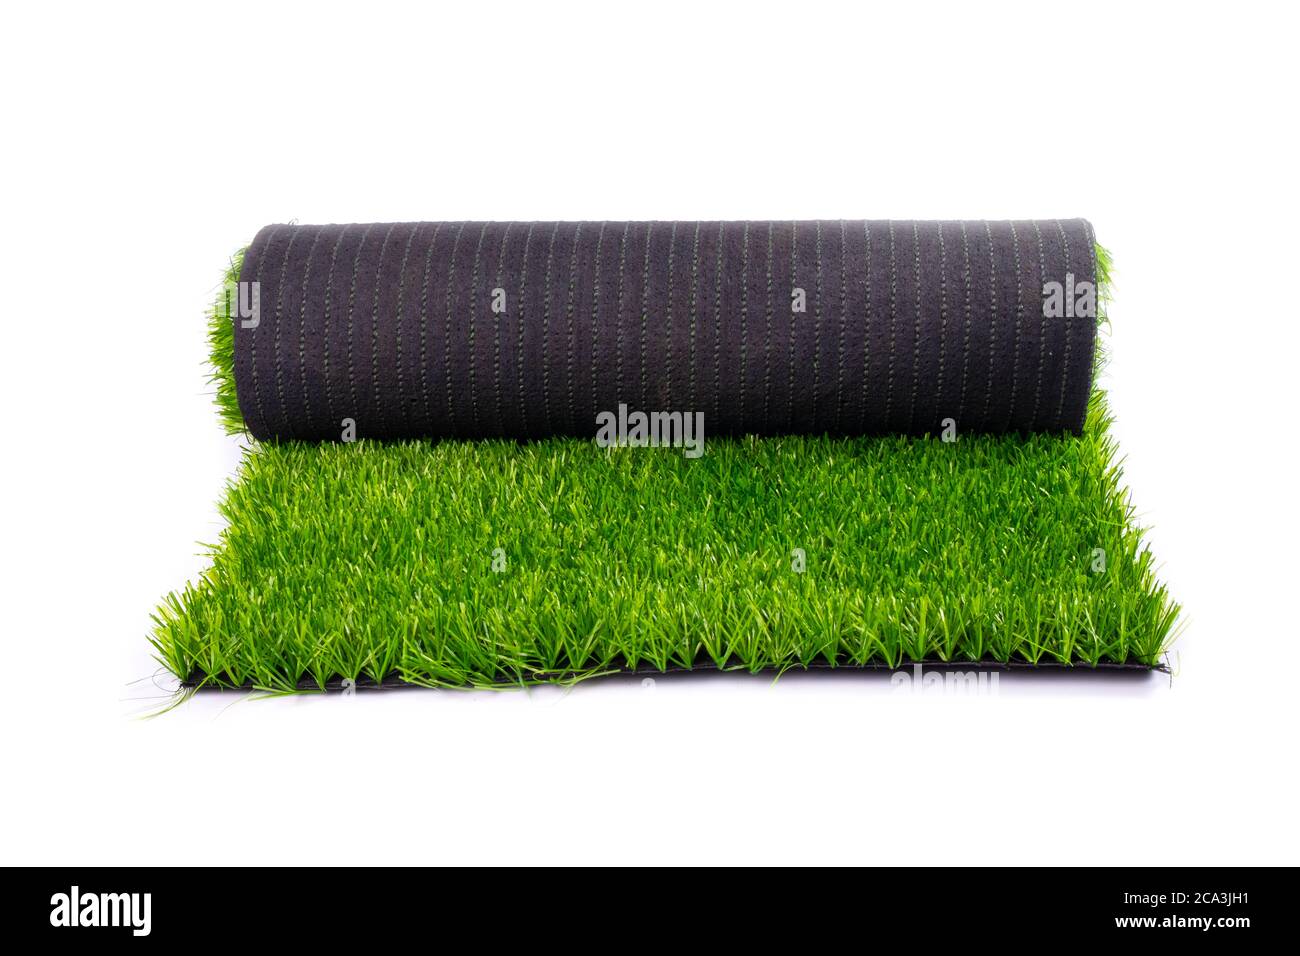 tapis, herbe verte artificielle, rouleau avec pelouse verte isolée sur fond blanc. Banque D'Images